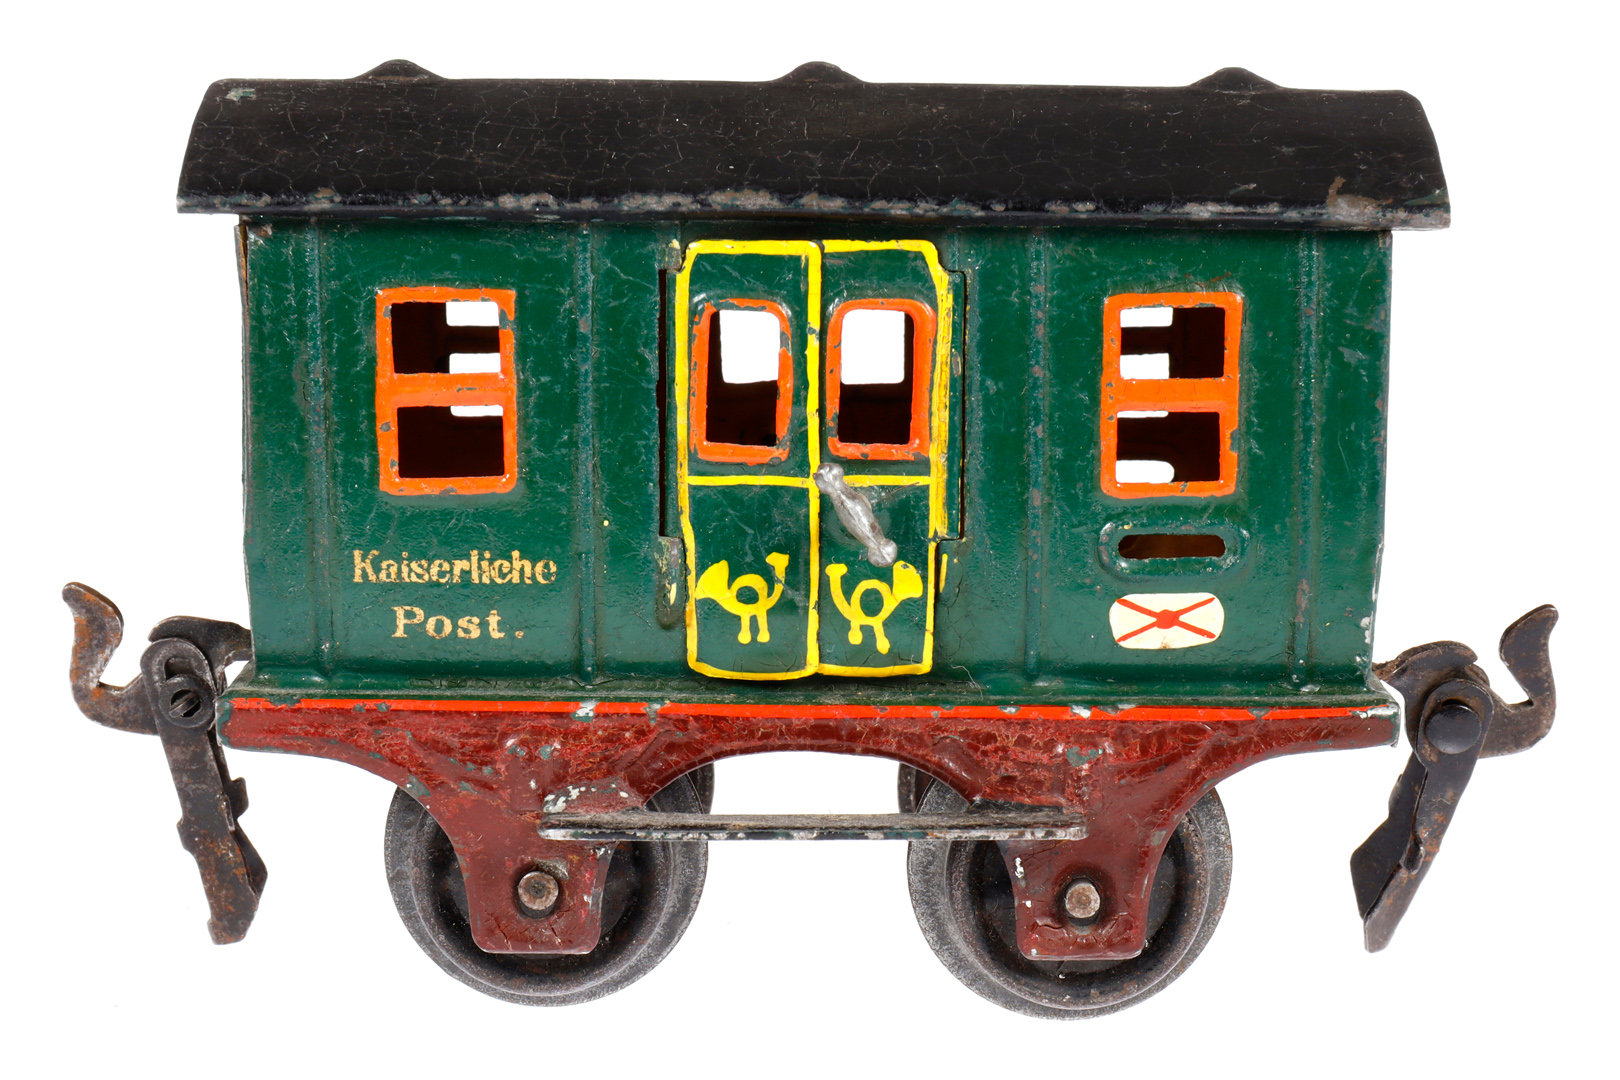 Märklin Postwagen 1802, Spur 0, uralt, HL, mit 2 DT, LS und gealterter Lack, L 9,5, Z 2-3